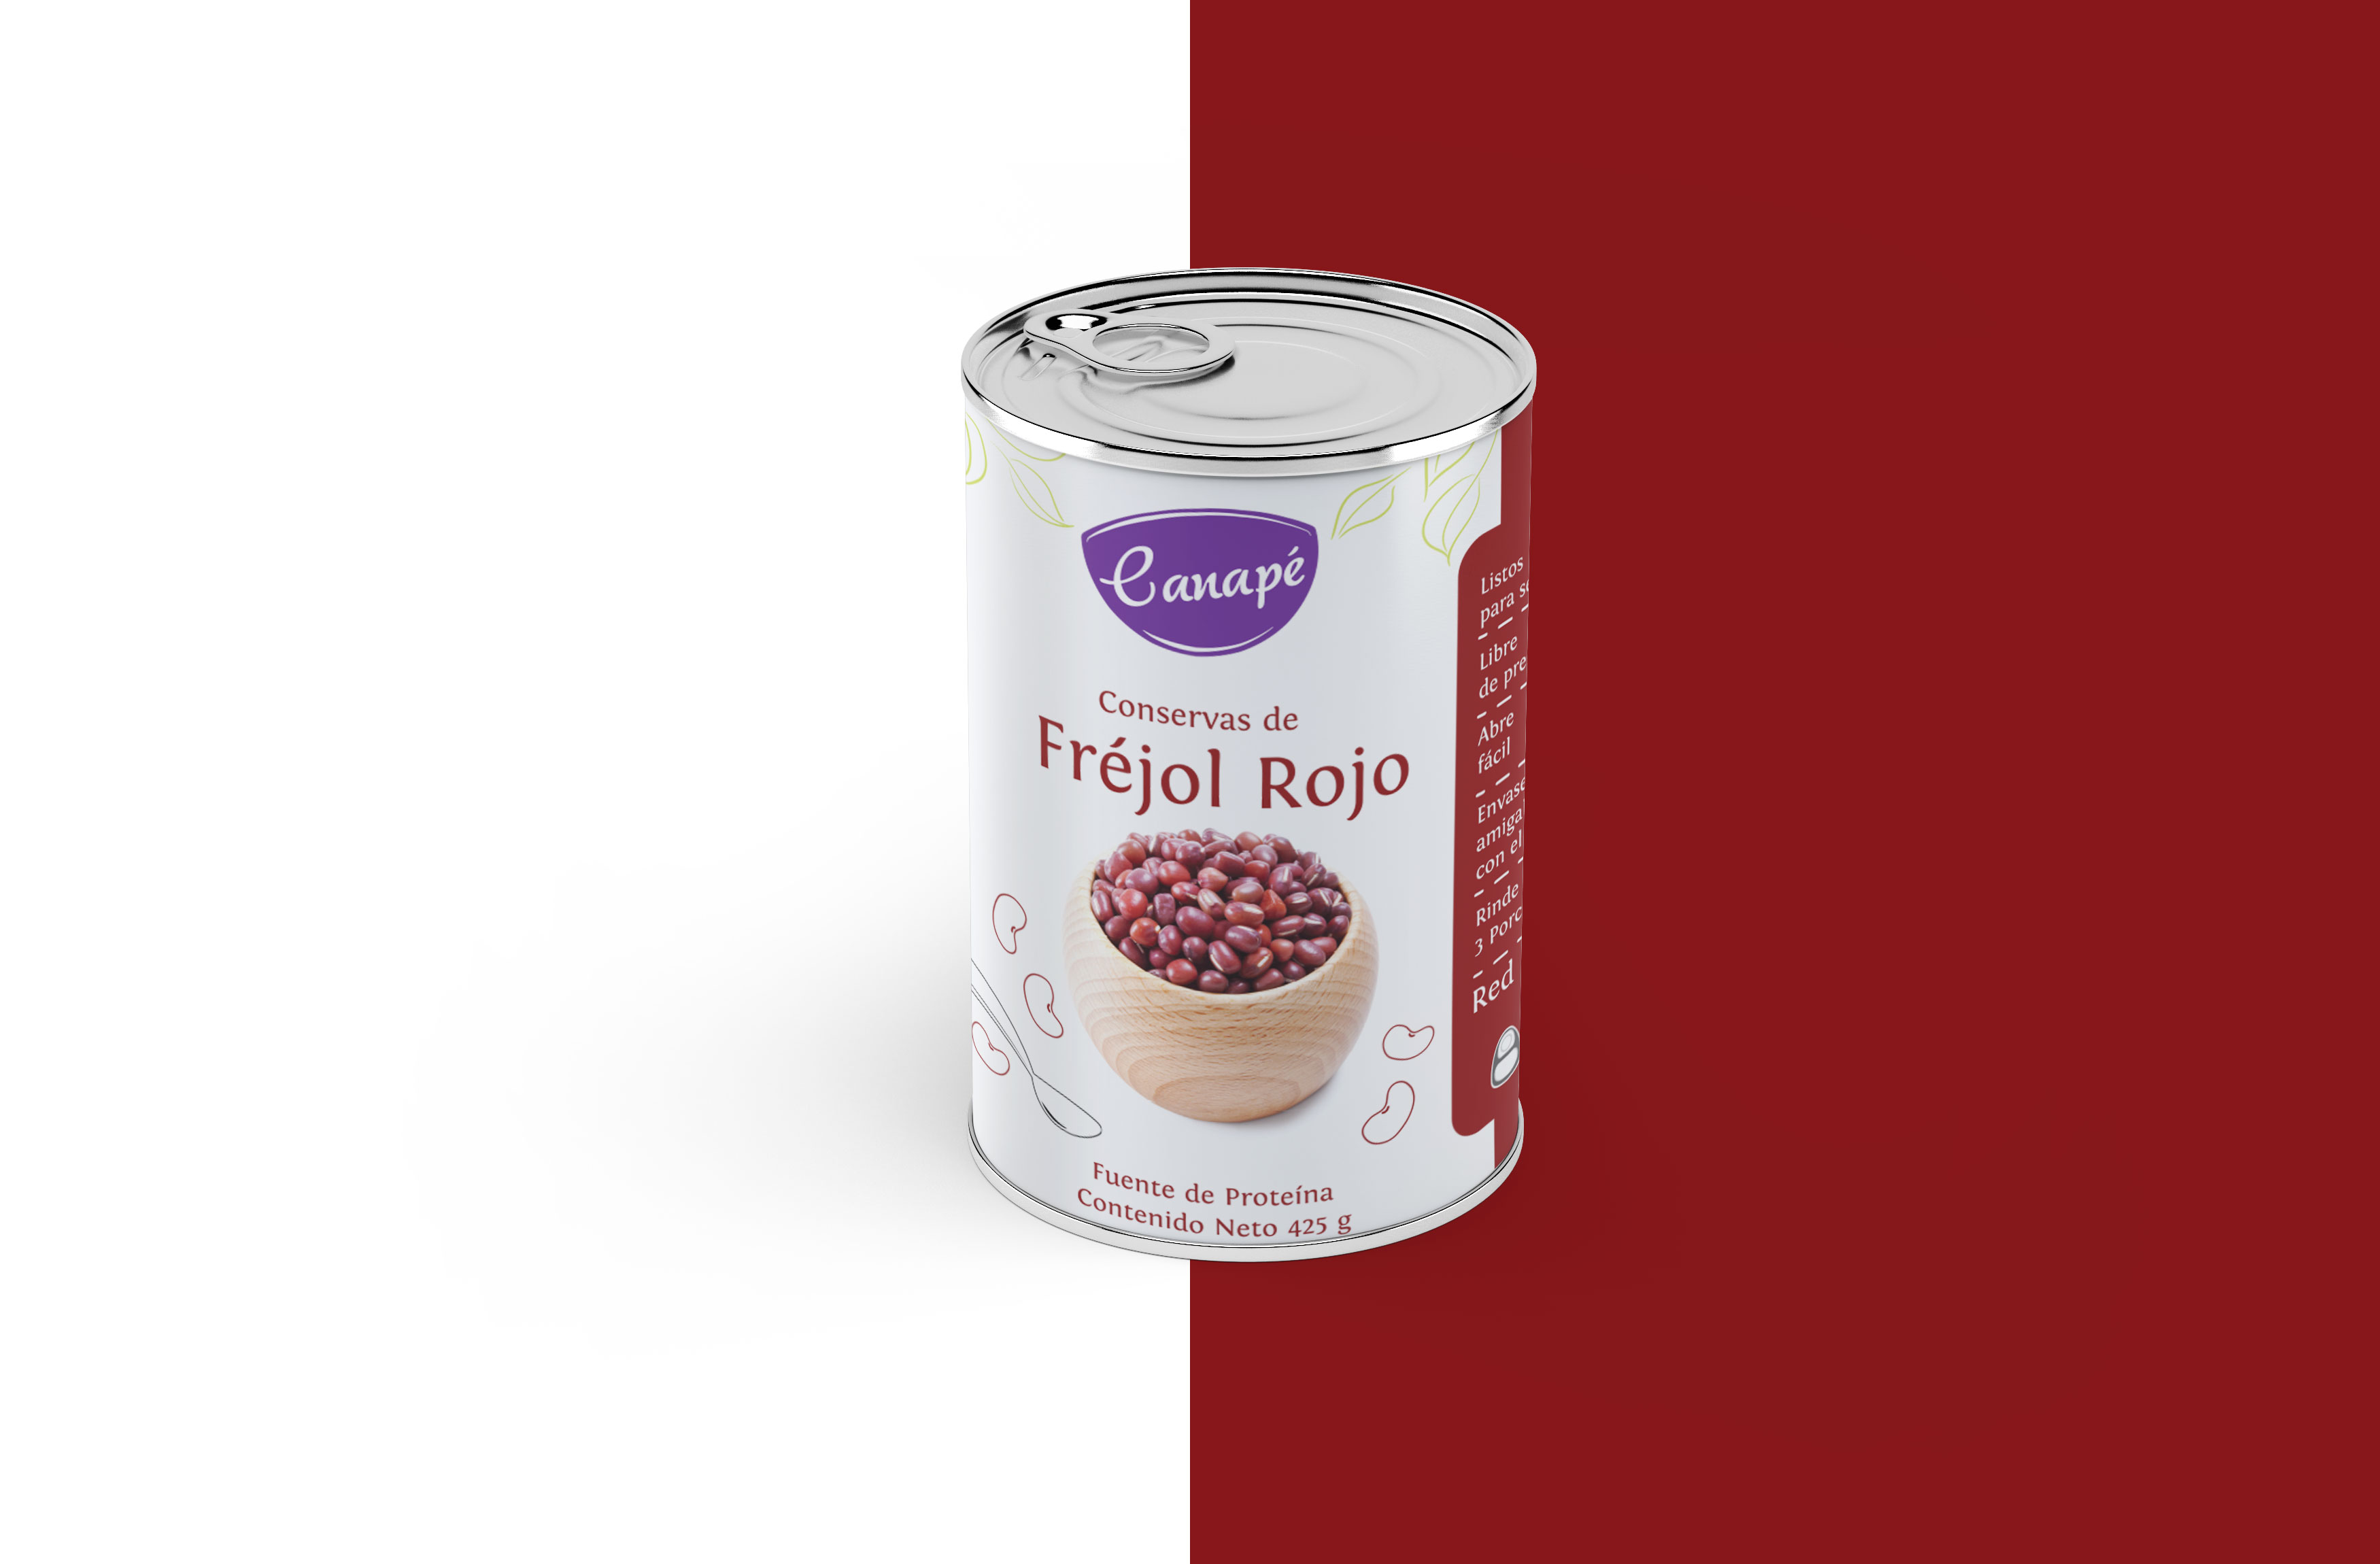 Label design - Canapé frejol rojo